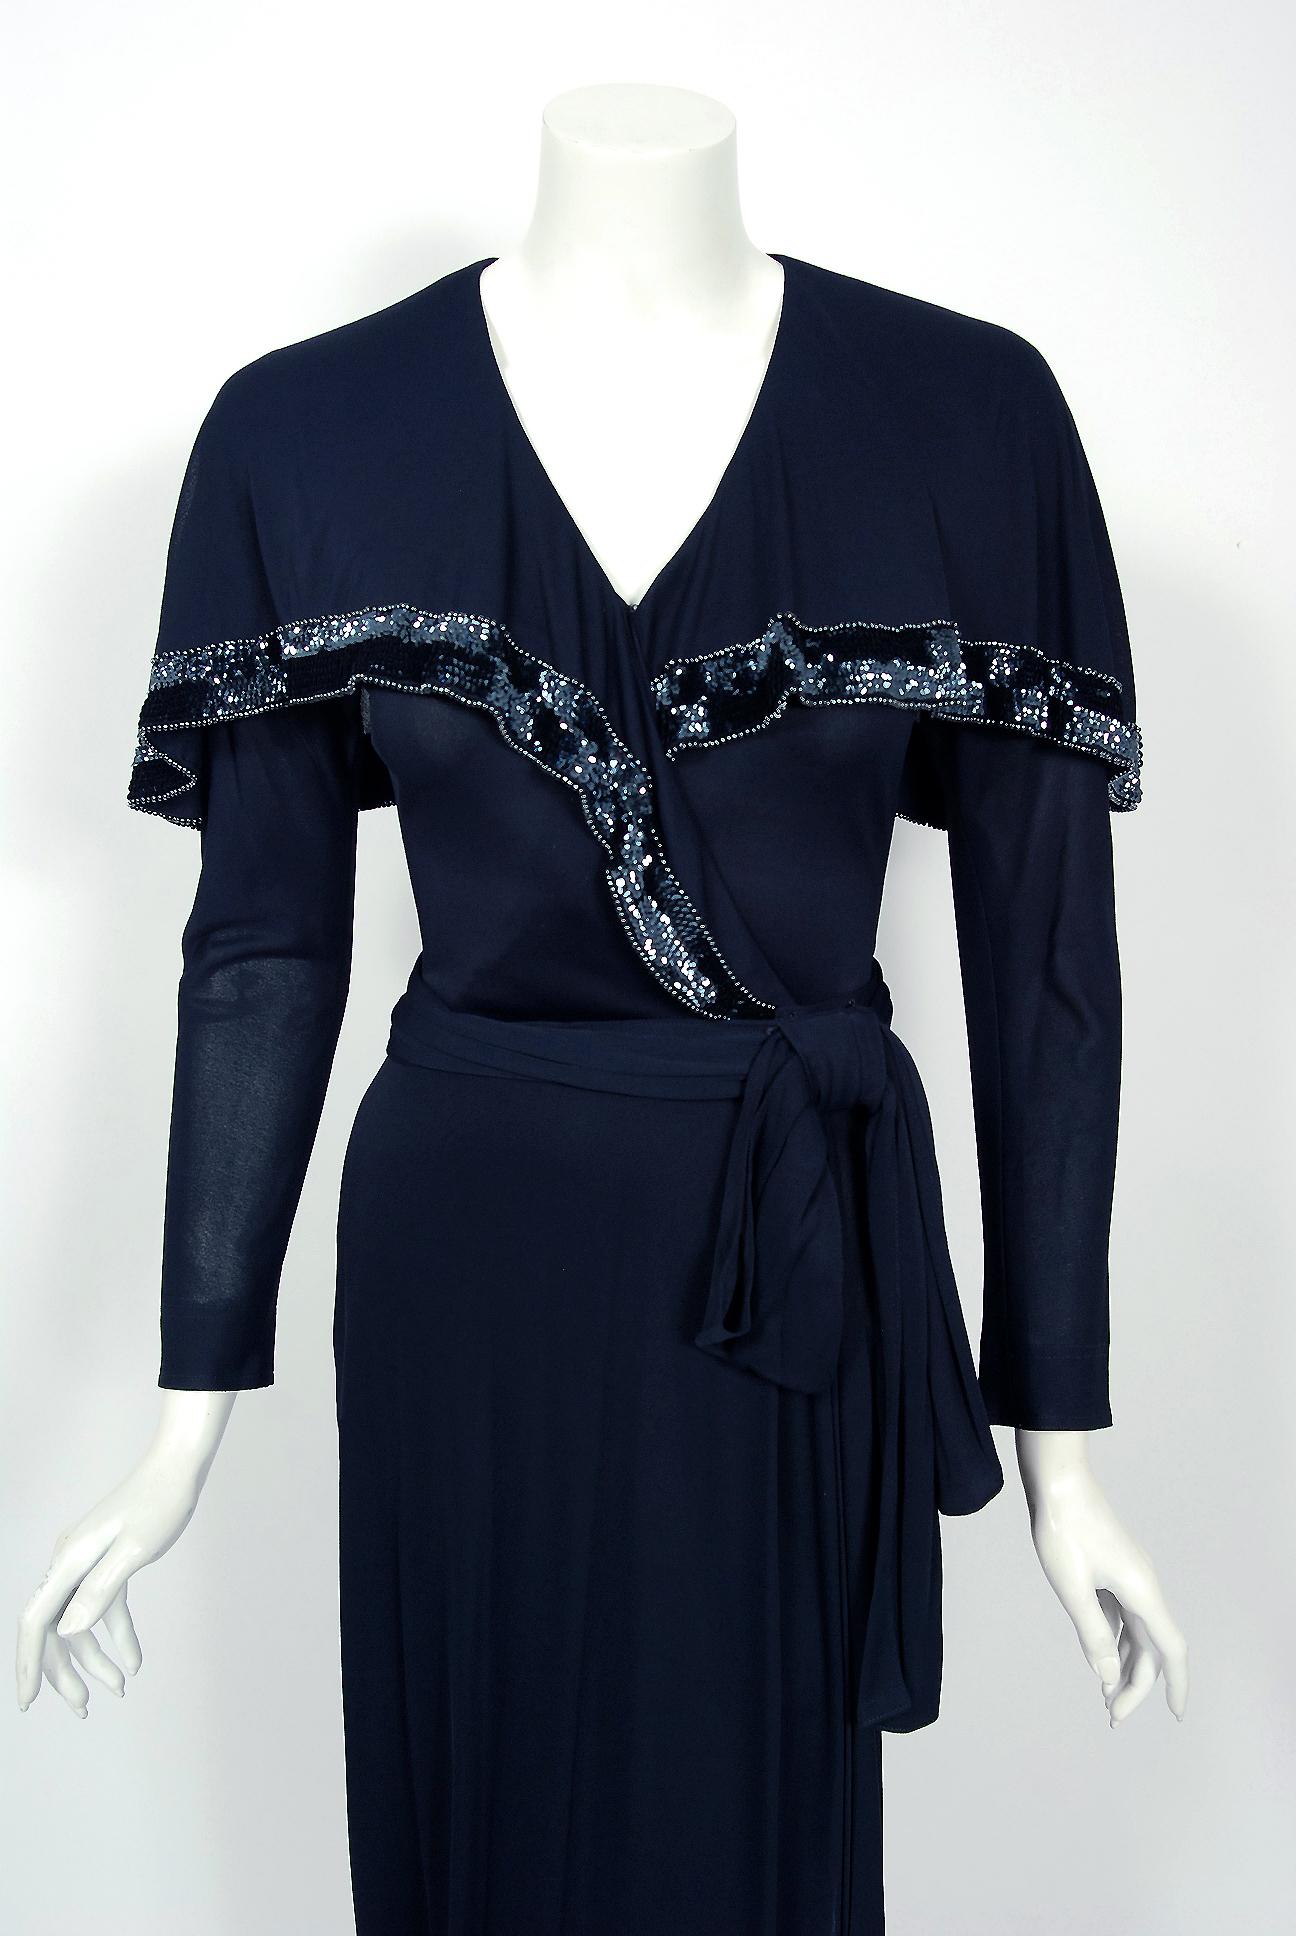 Une magnifique robe en jersey de soie de la créatrice Jean Muir, datant de 1977, avec les étiquettes de prix d'origine de 2895 $ encore attachées. L'autodidacte Muir s'est fait un nom dans les années 1960, se créant une réputation pour ses vêtements